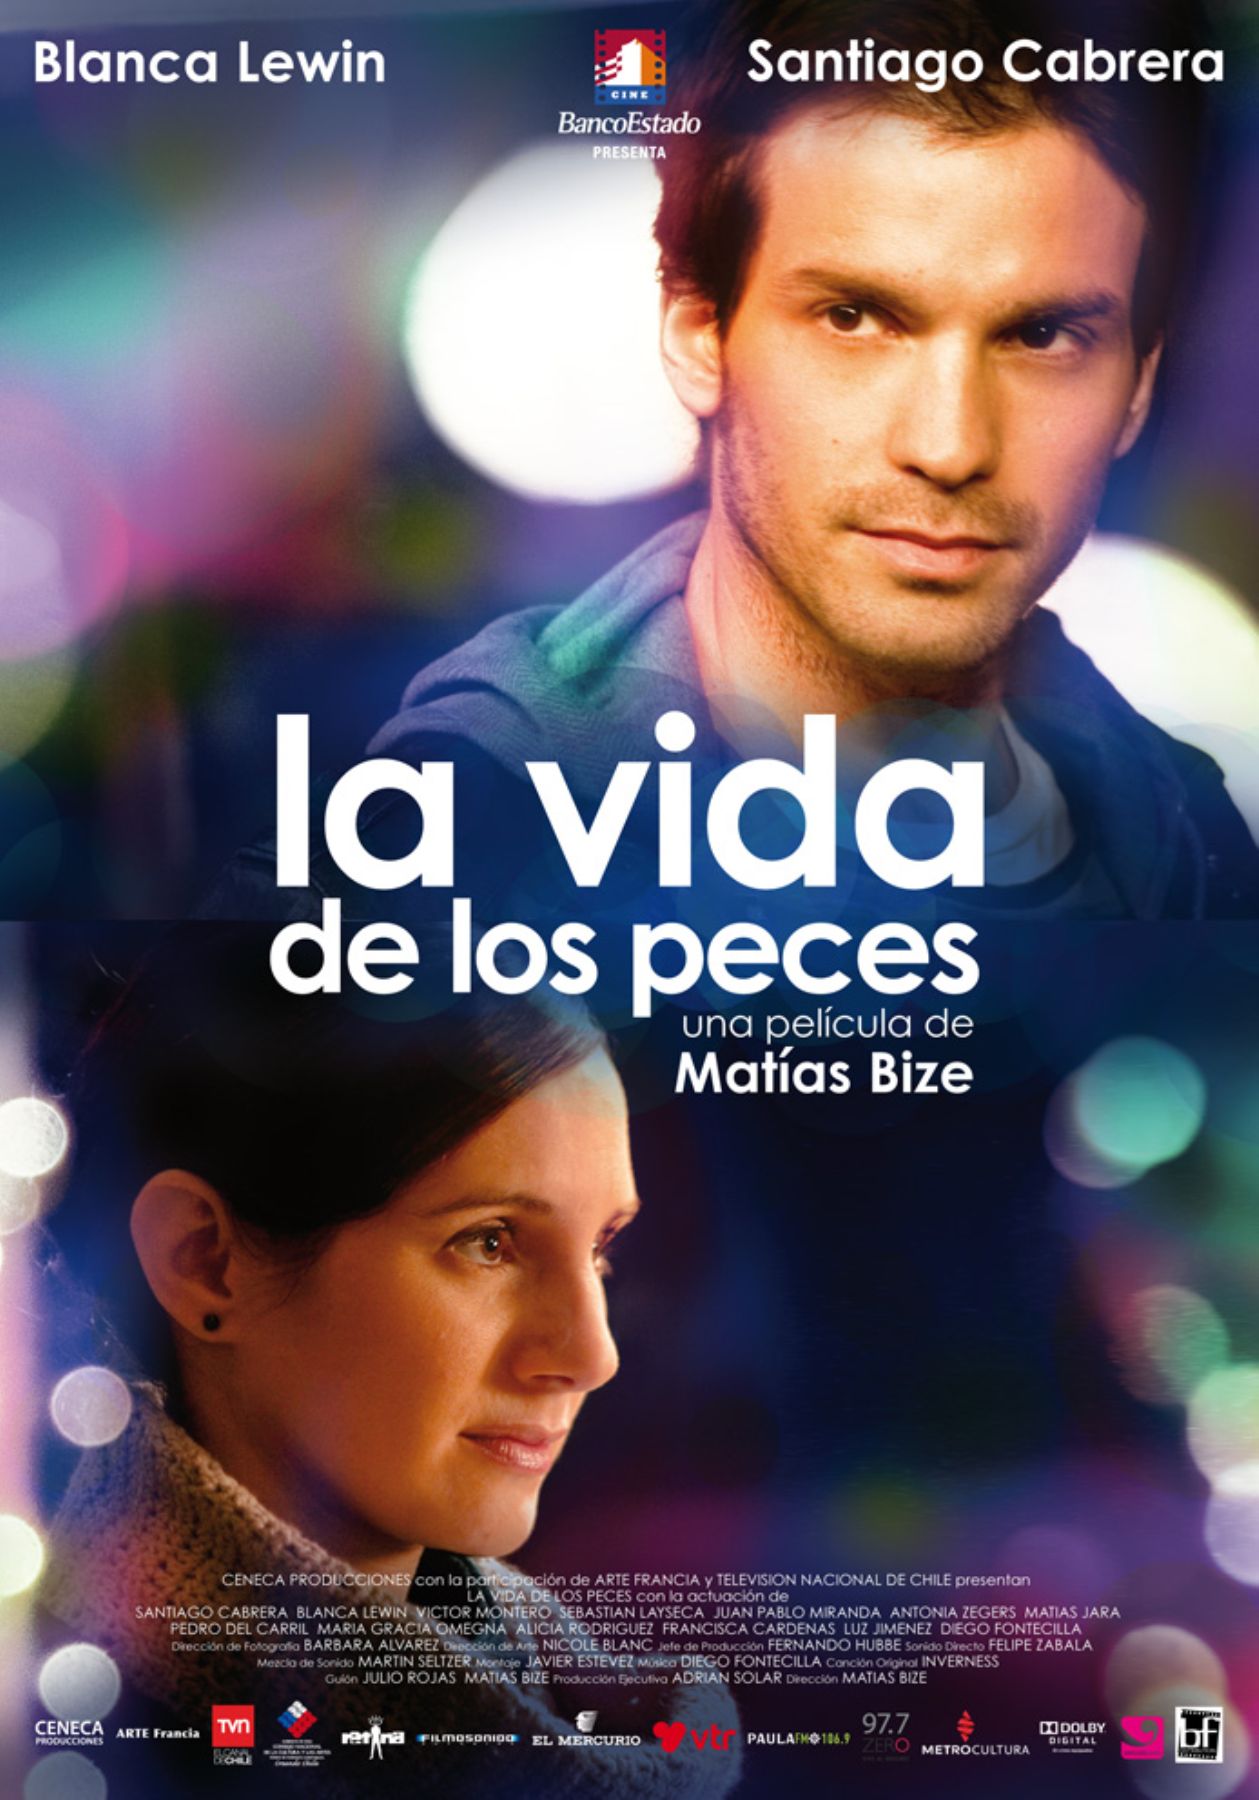 Afiche de la película chilena La vida de los peces, que compite por una nominación al Oscar.